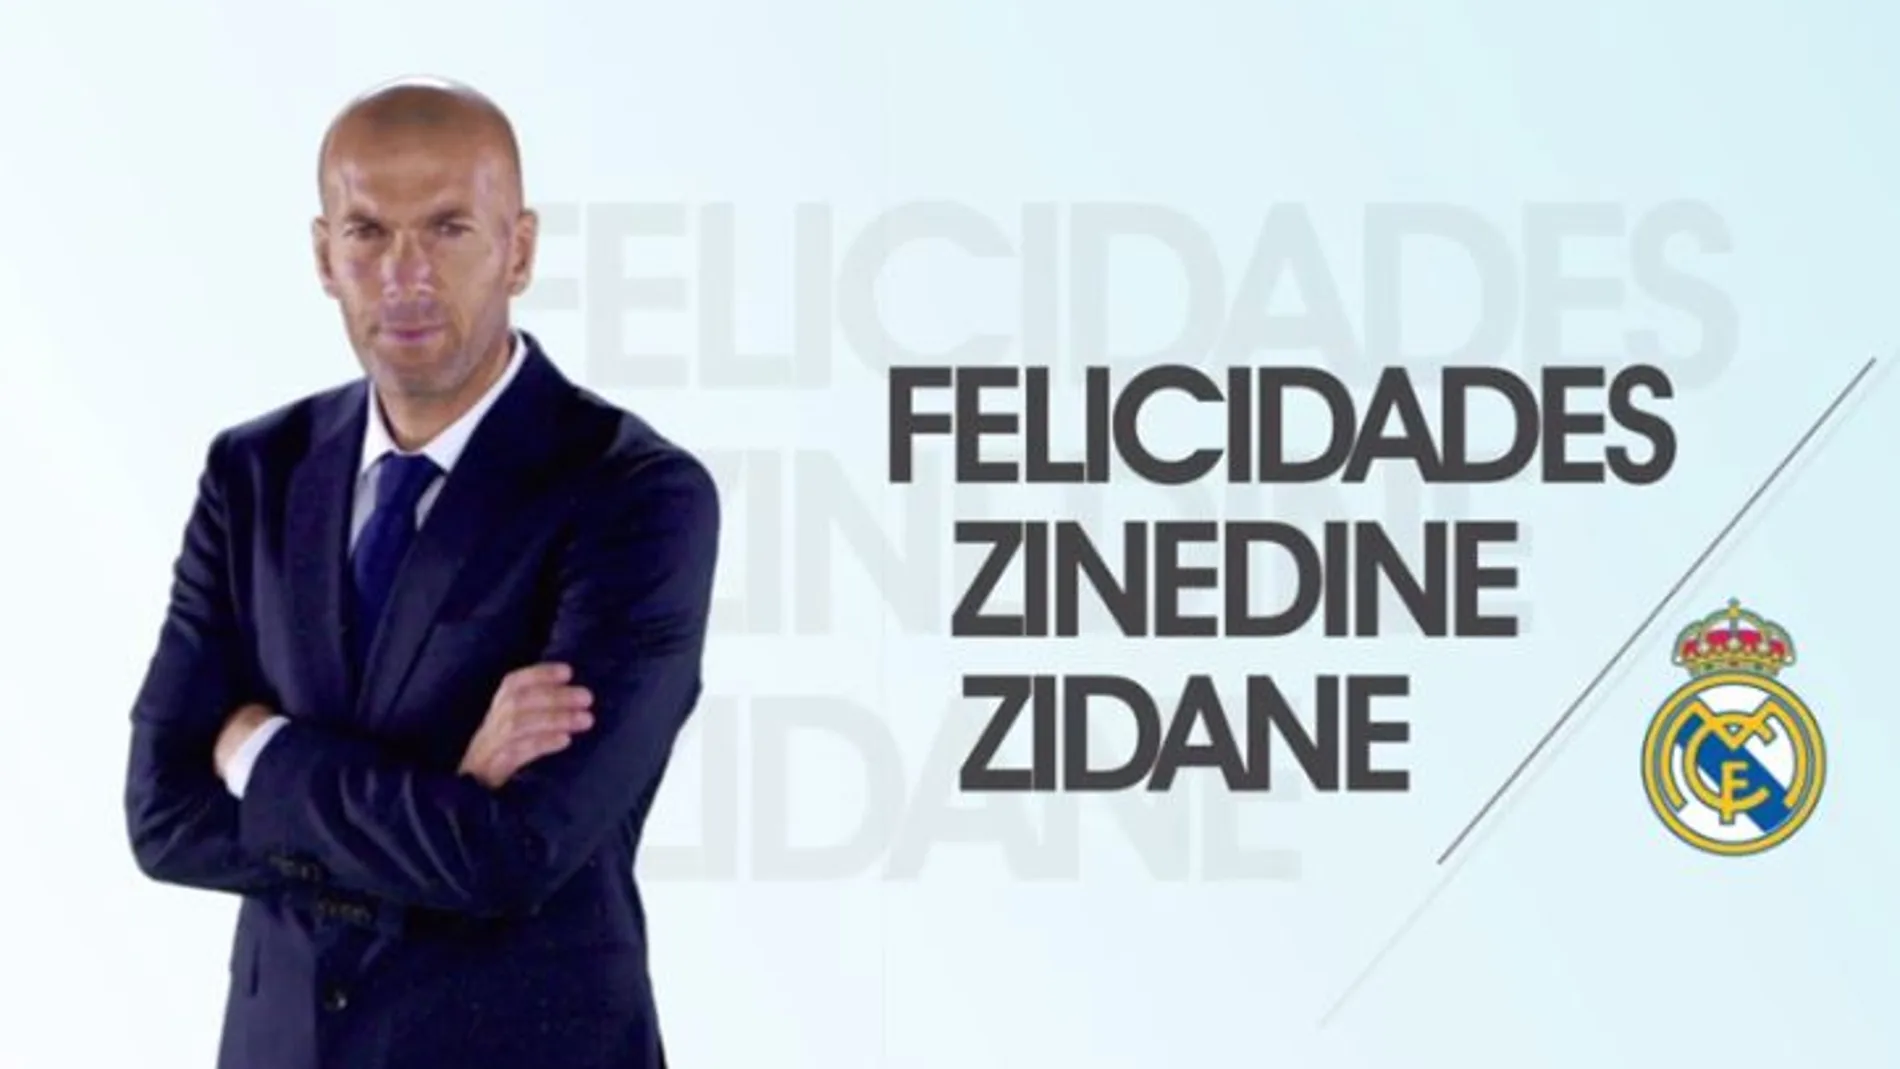 Imagen de felicitación del Real Madrid a su entrenador